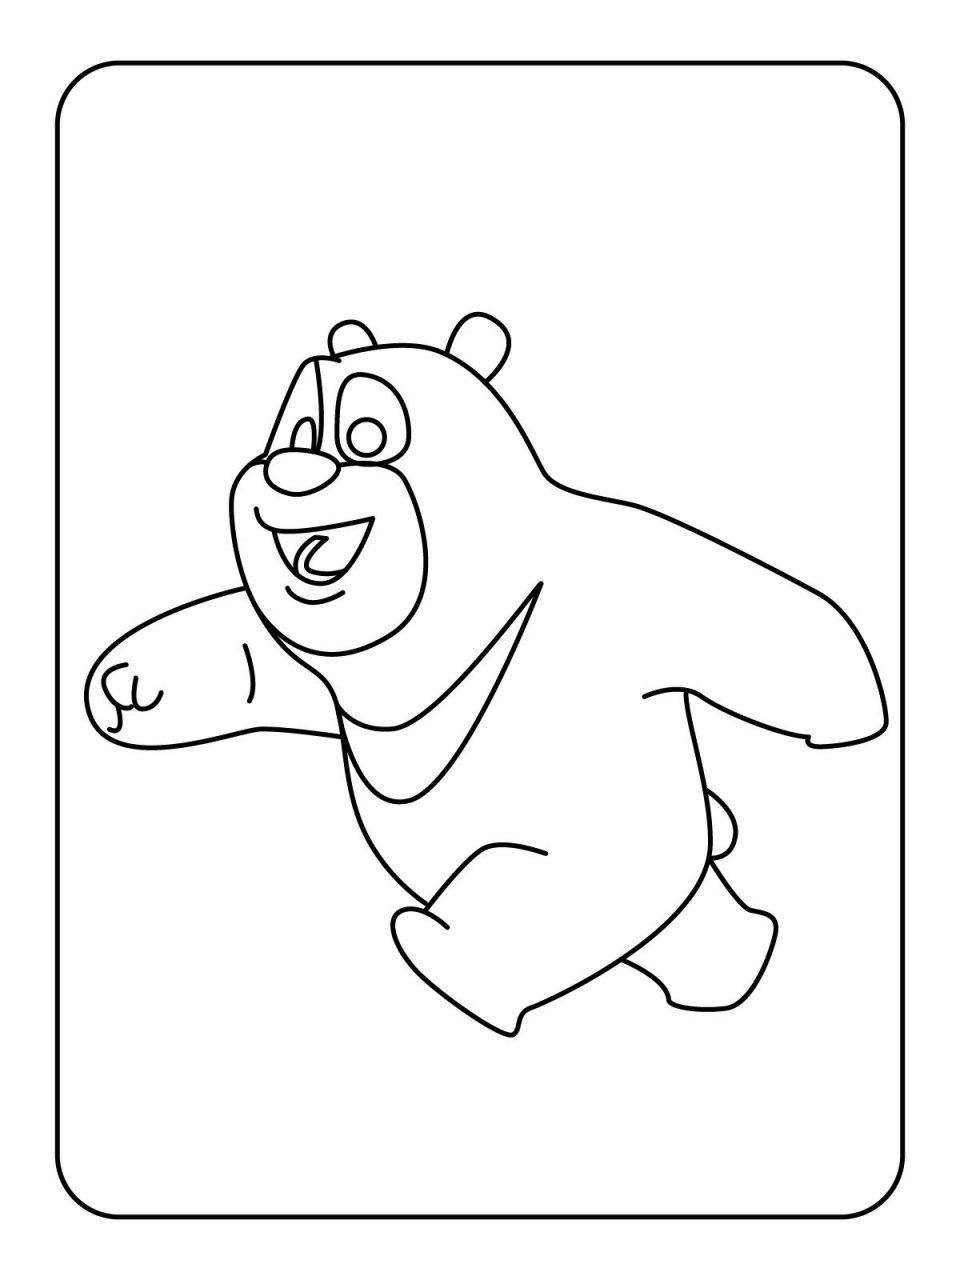 熊出没的画法图片